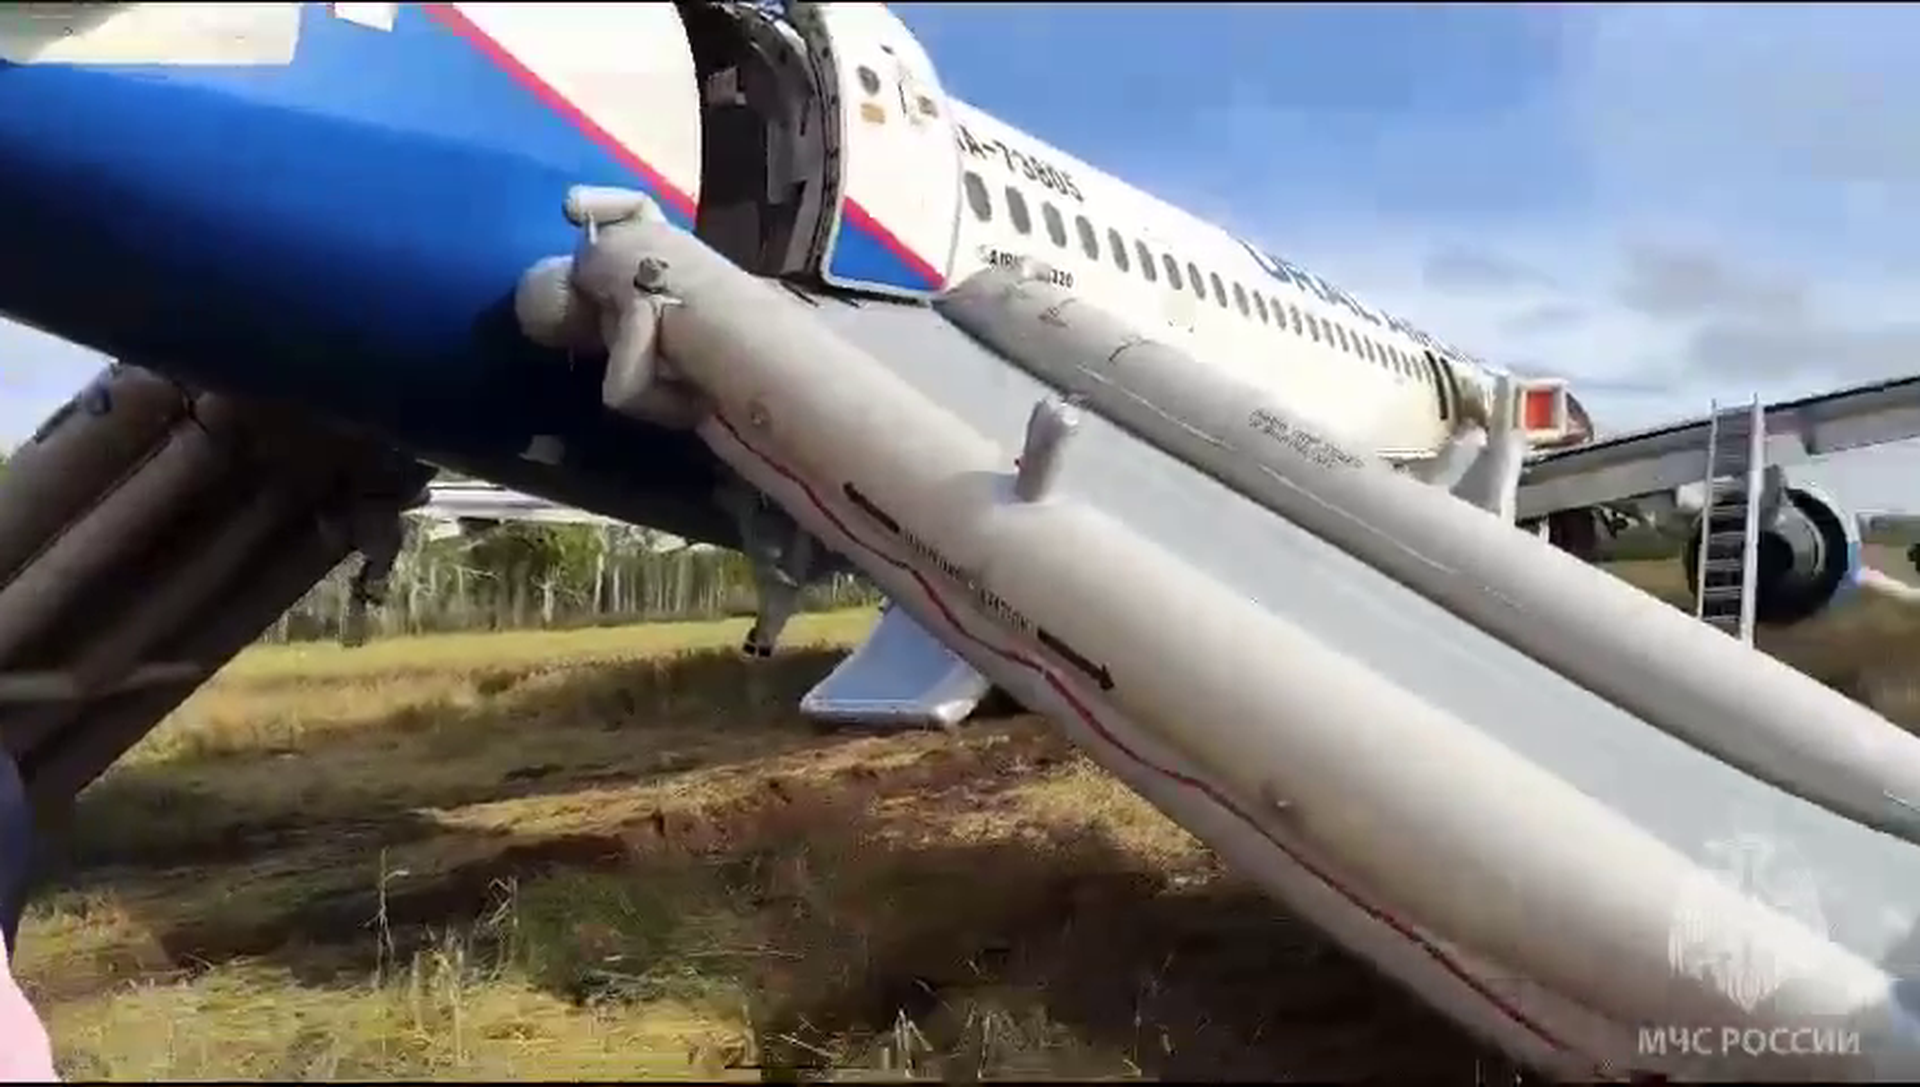 Авиаэксперт: проблемы с запчастями могли стать причиной аварийной посадки самолёта в Новосибирской области